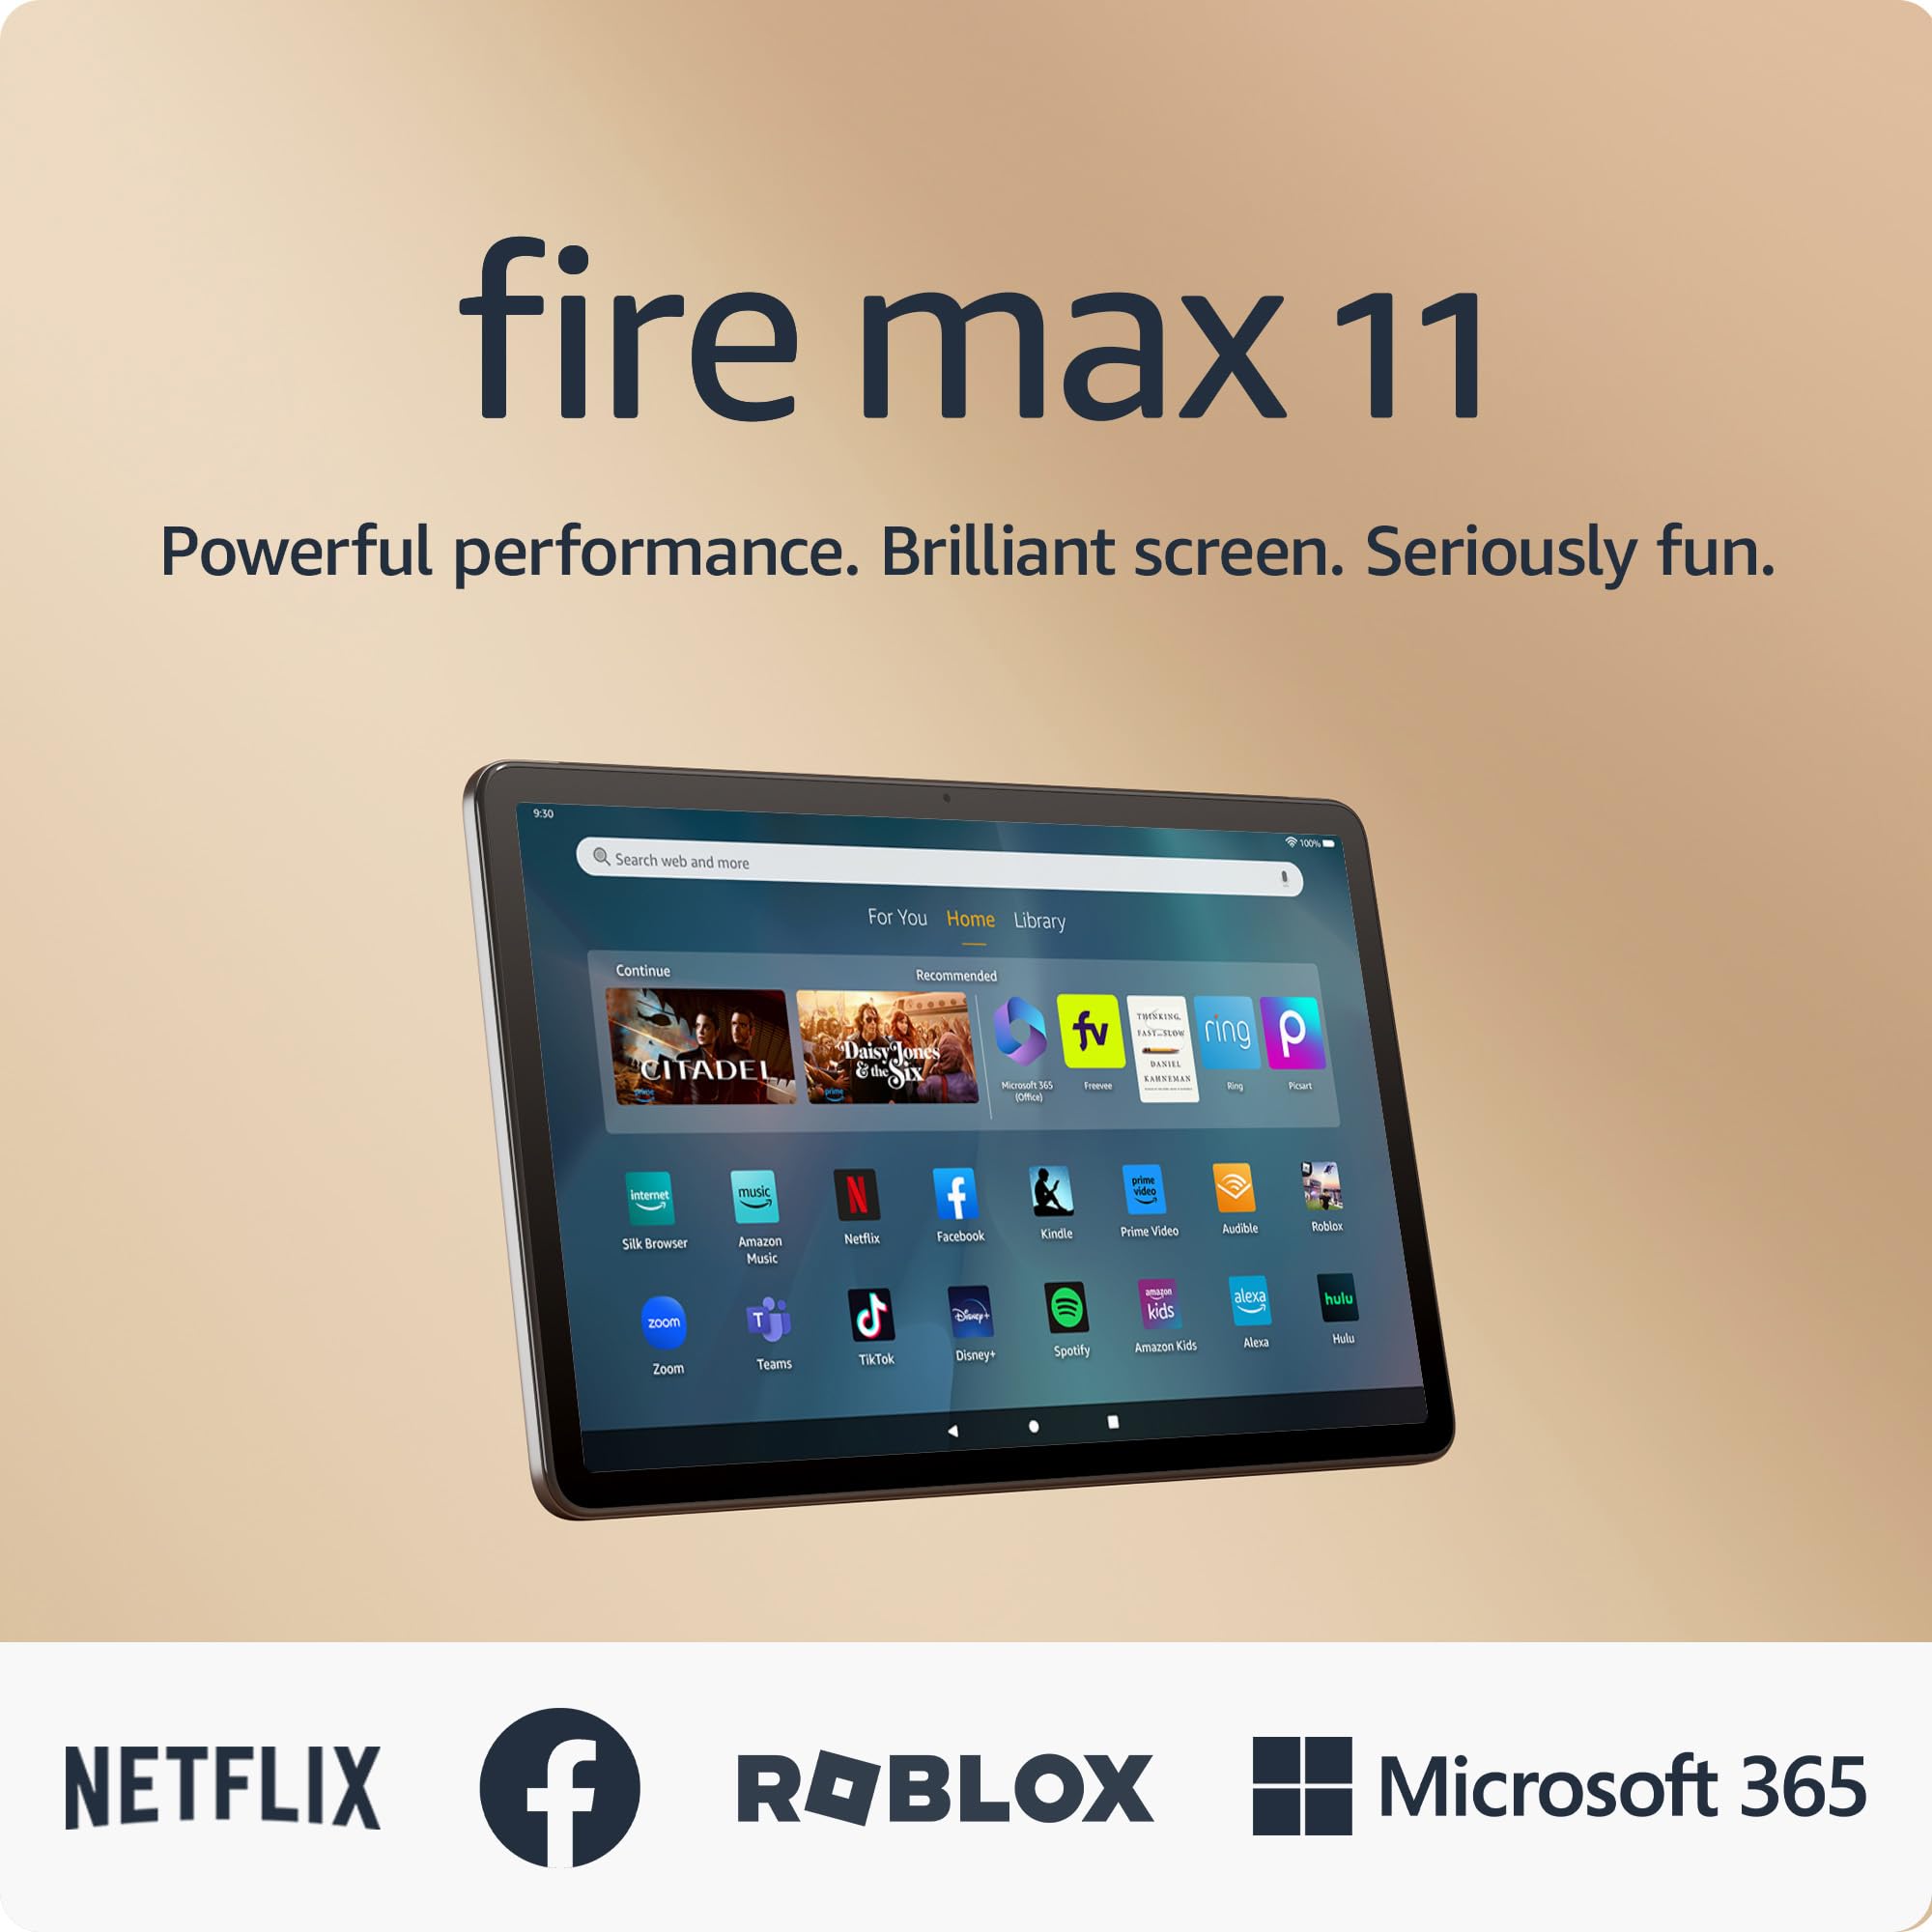 Tableta Amazon Fire Max 11, nuestra tablet más potente hasta la fecha, pantalla vívida de 11", procesador octa-core, 4 GB RAM, batería con 14 horas de autonomía, 64 GB, Gris